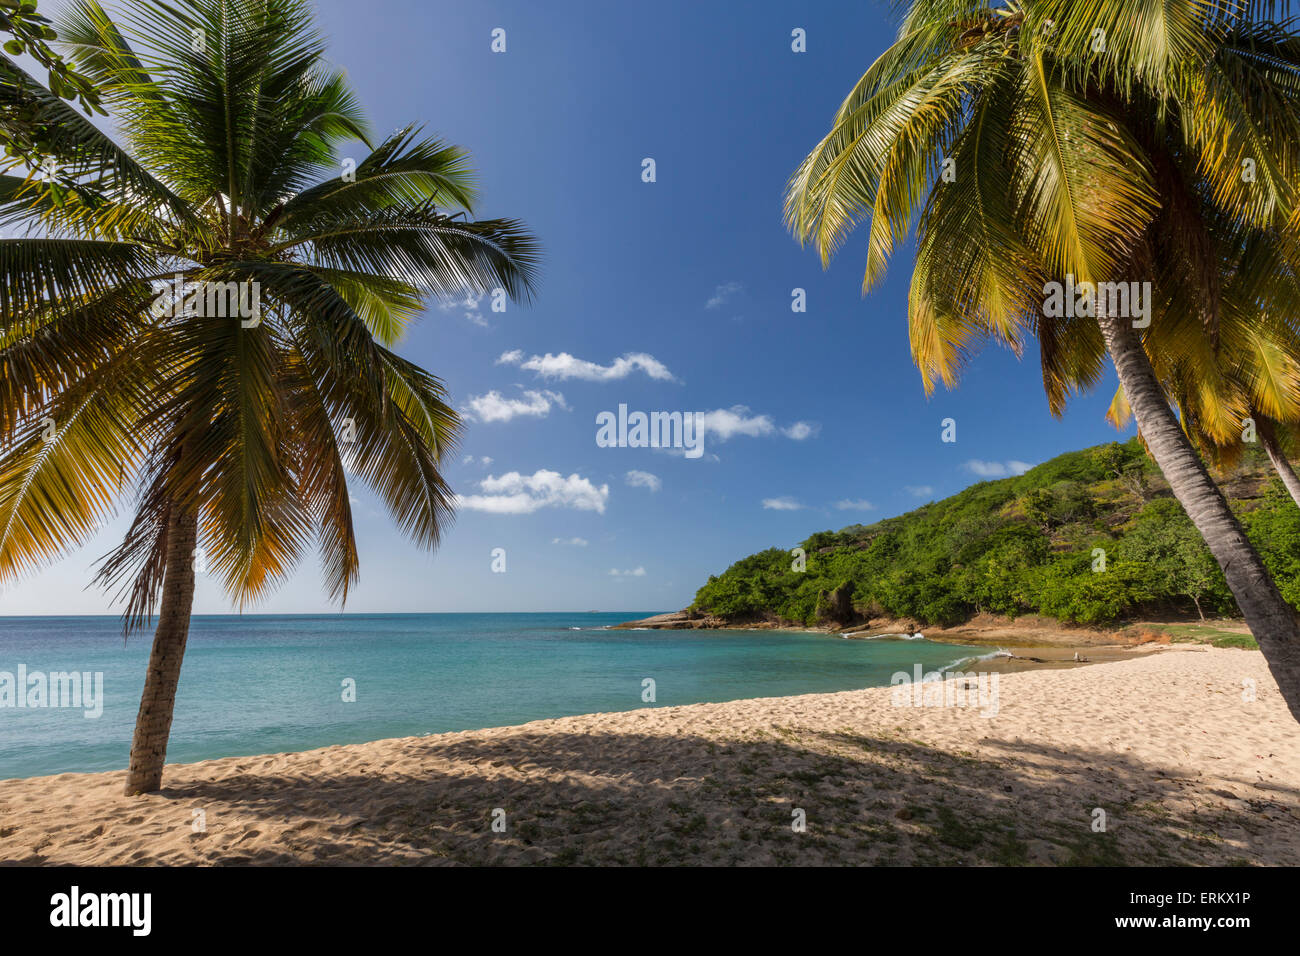 Palmiers prospérer sur la belle plage de tortue imbriquée qui abrite l'un des plus luxueux resorts dans les Caraïbes, Antigua Banque D'Images